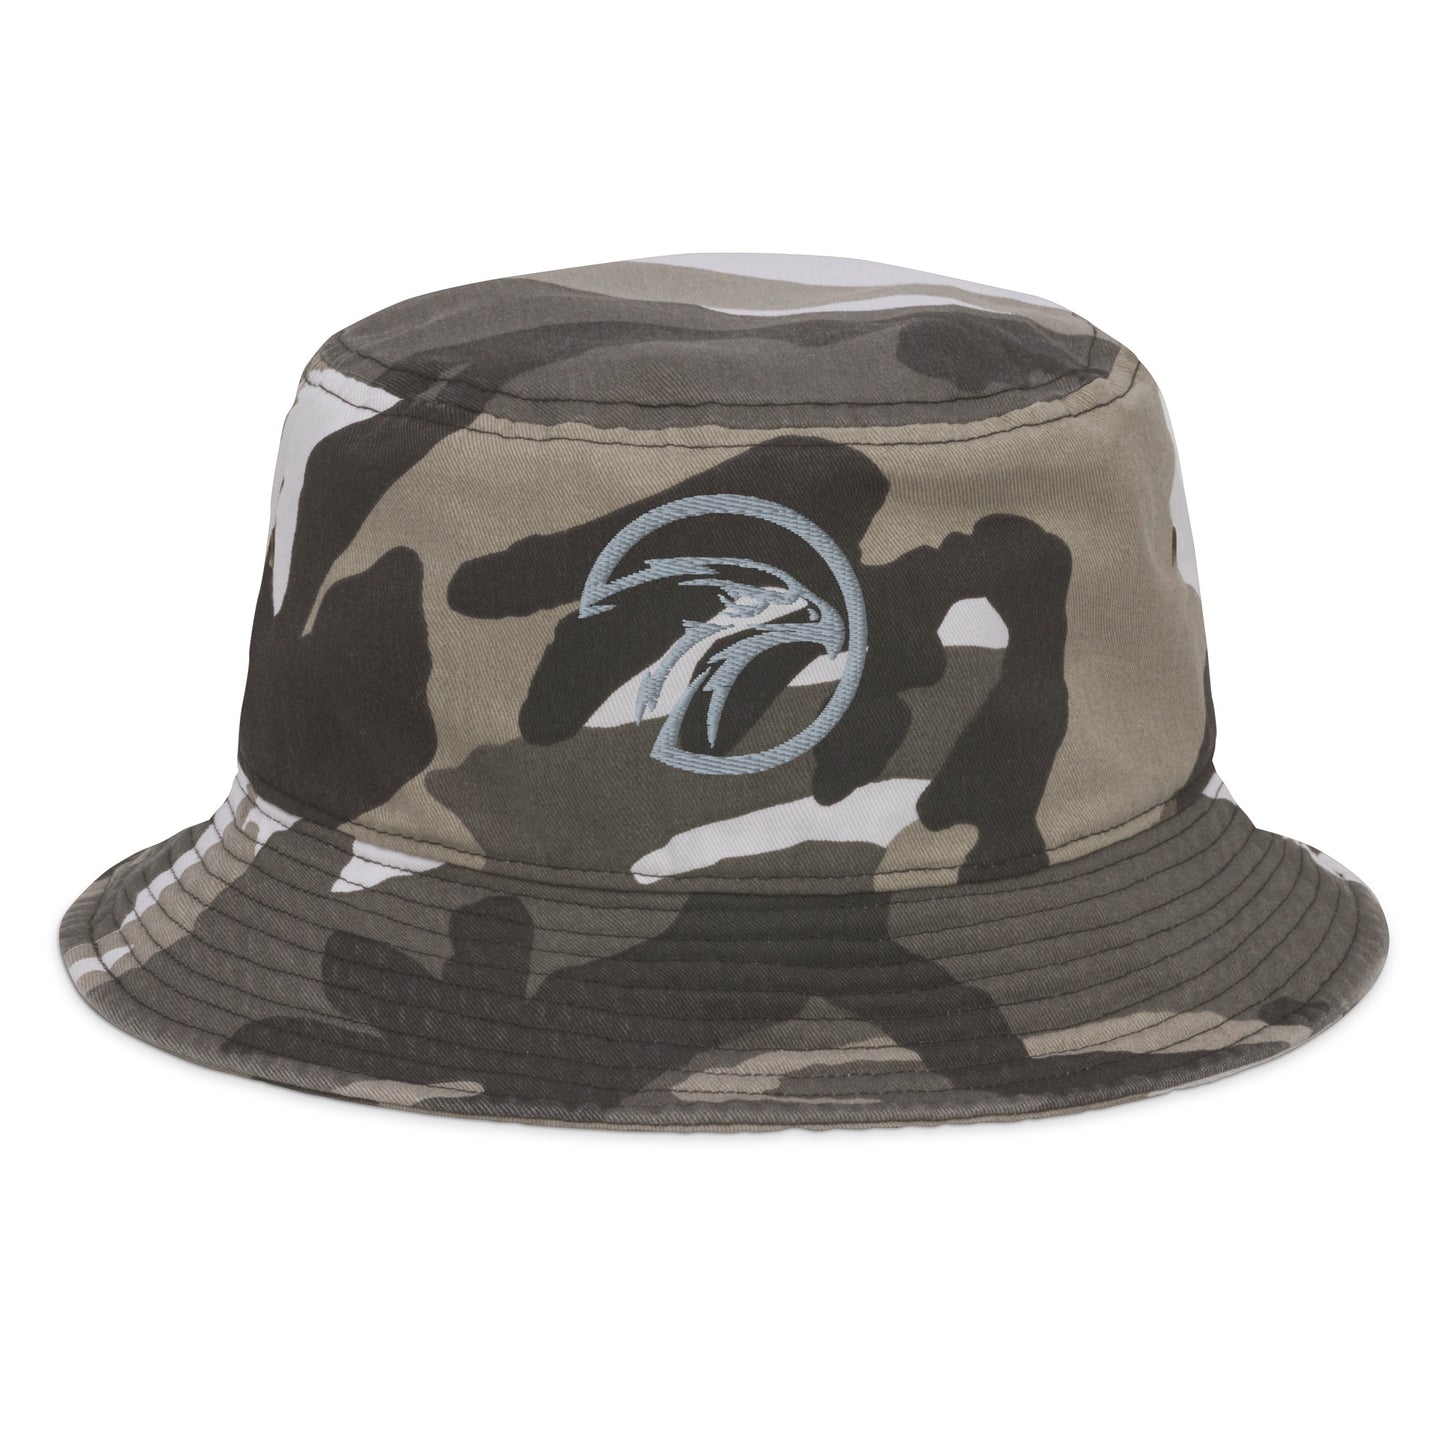 Eagle Fashion bucket hat